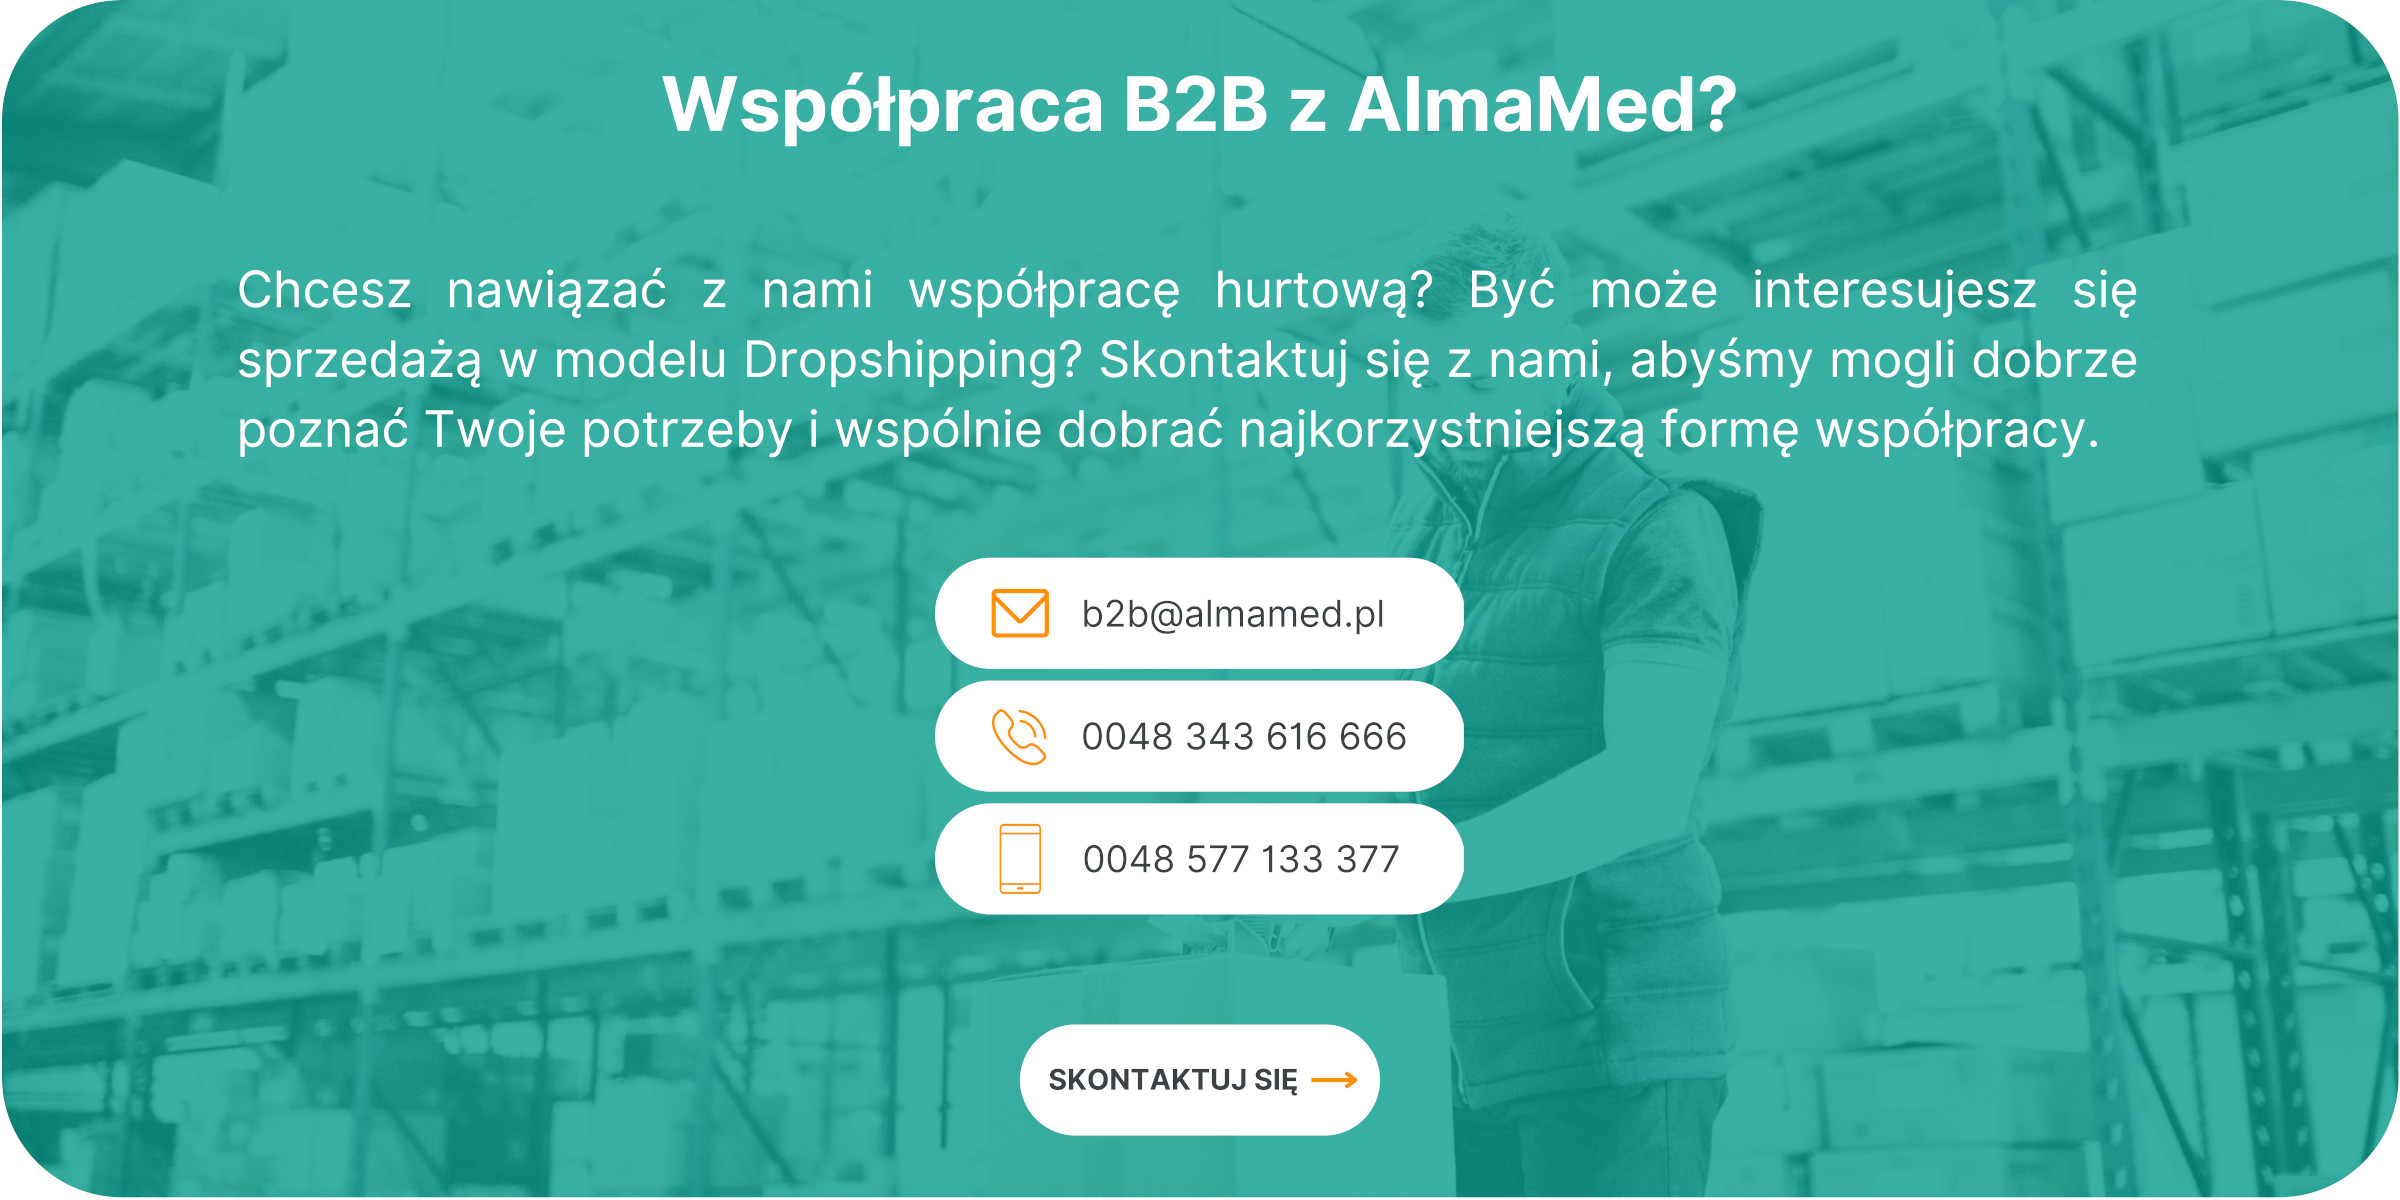 Współpraca B2B z AlmaMed